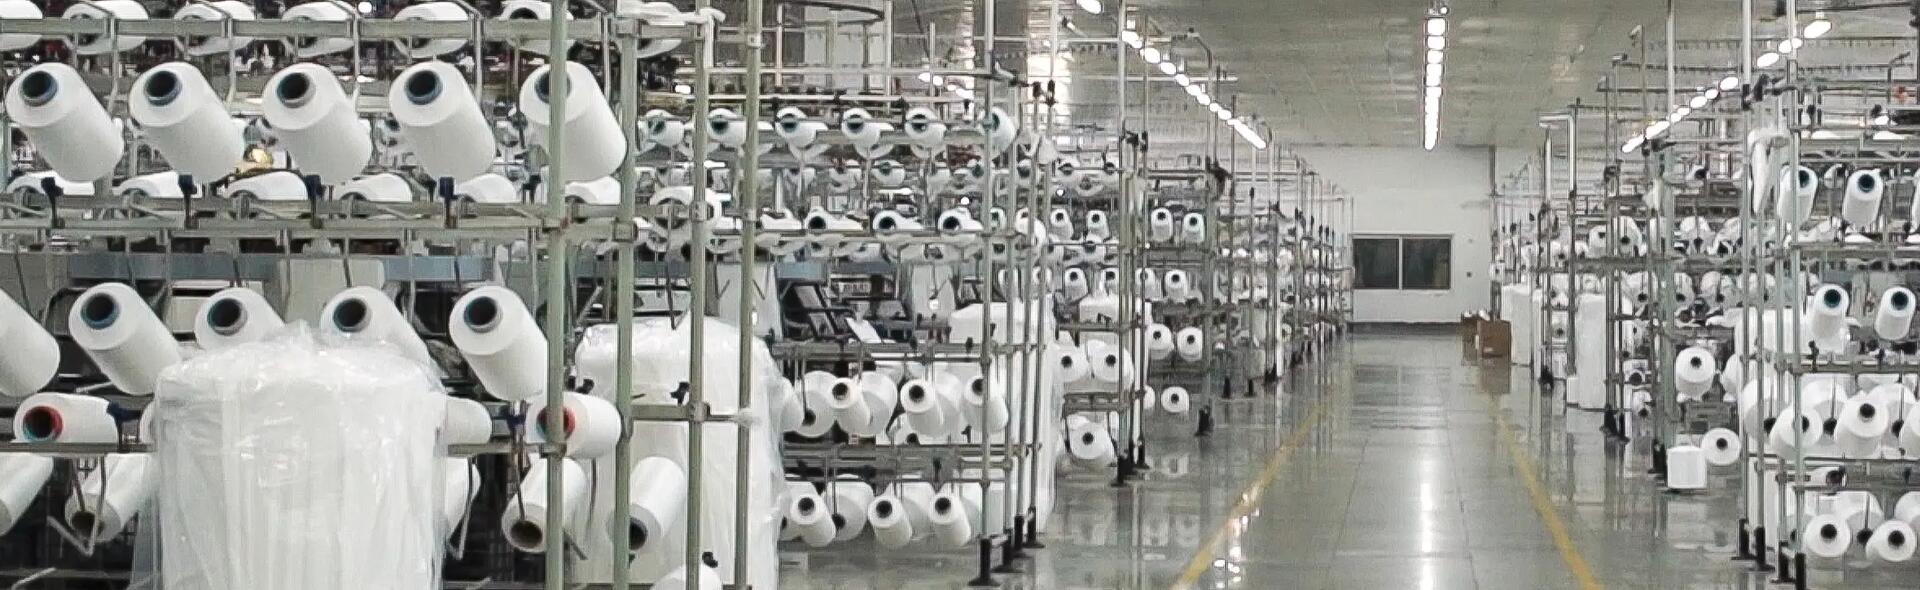 Photo de bobines de fils blancs en entrepôt